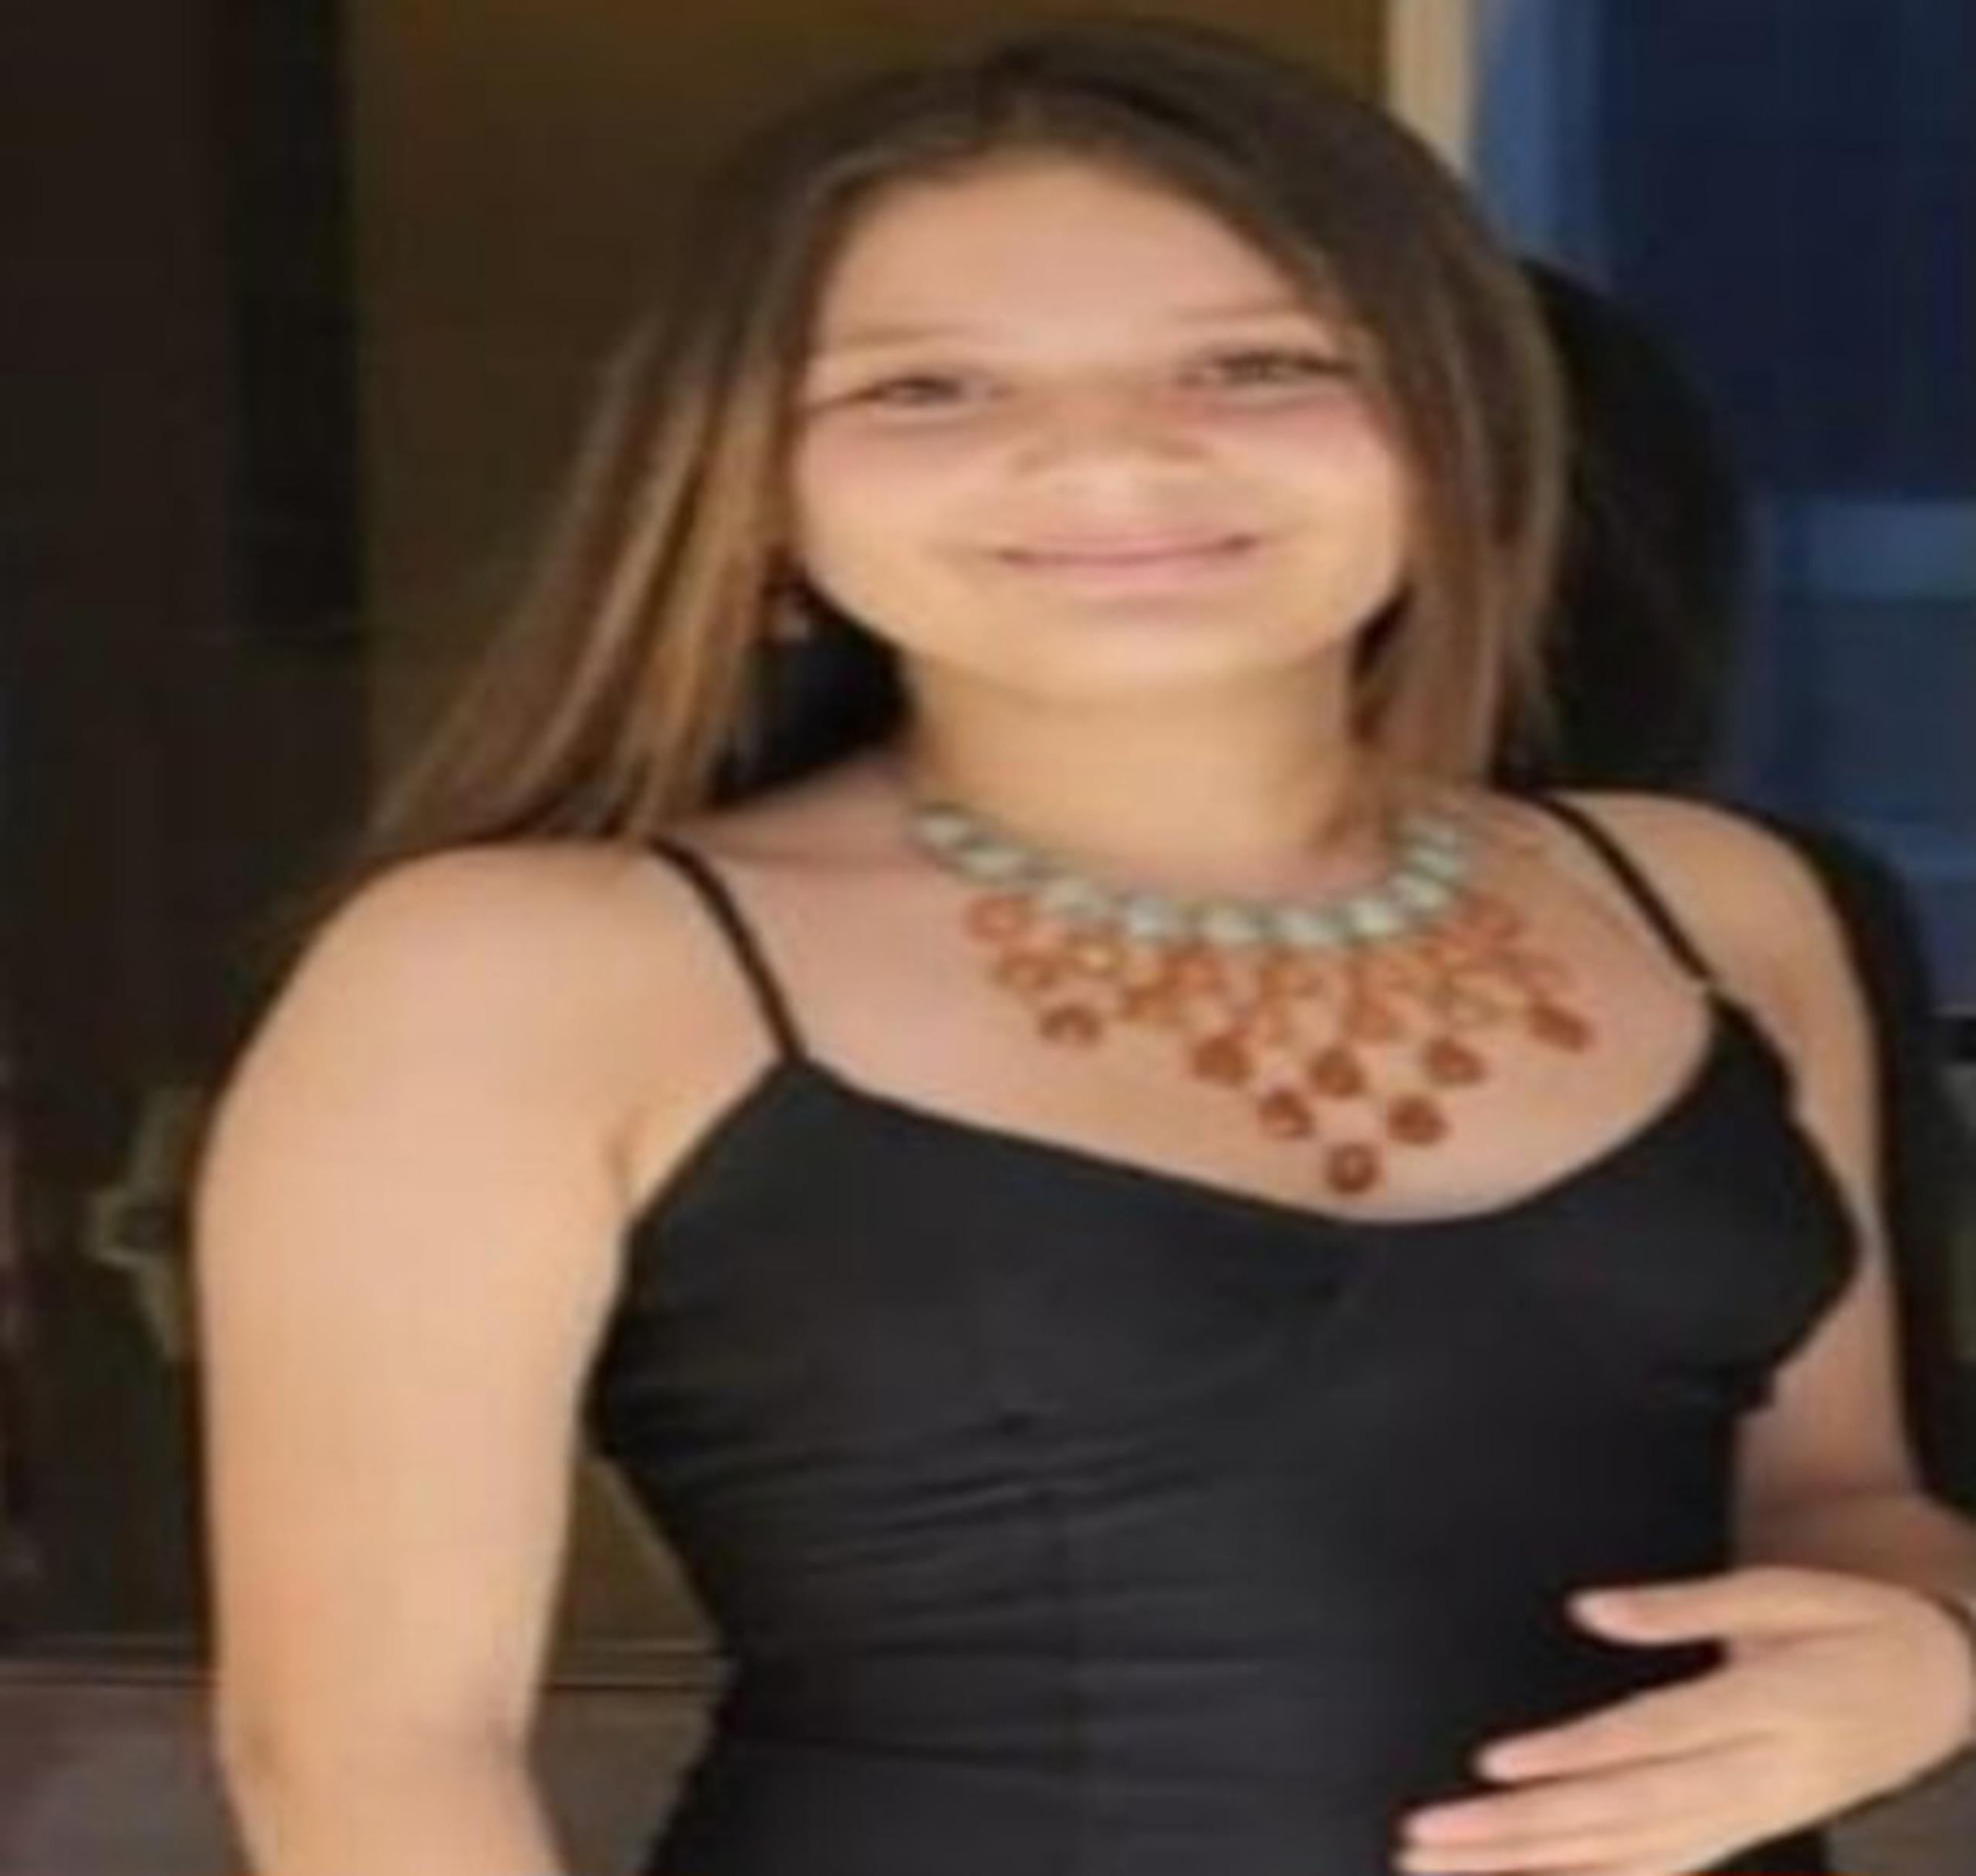 Jenielyz Meléndez Ayala, de 15 años, fue vista por última vez el 2 de agosto, en los predios del Embalse San José En Hato Rey, donde reside. Si la ha visto llame a la línea confidencial del Negociado de la Policía al (787) 343-2020.